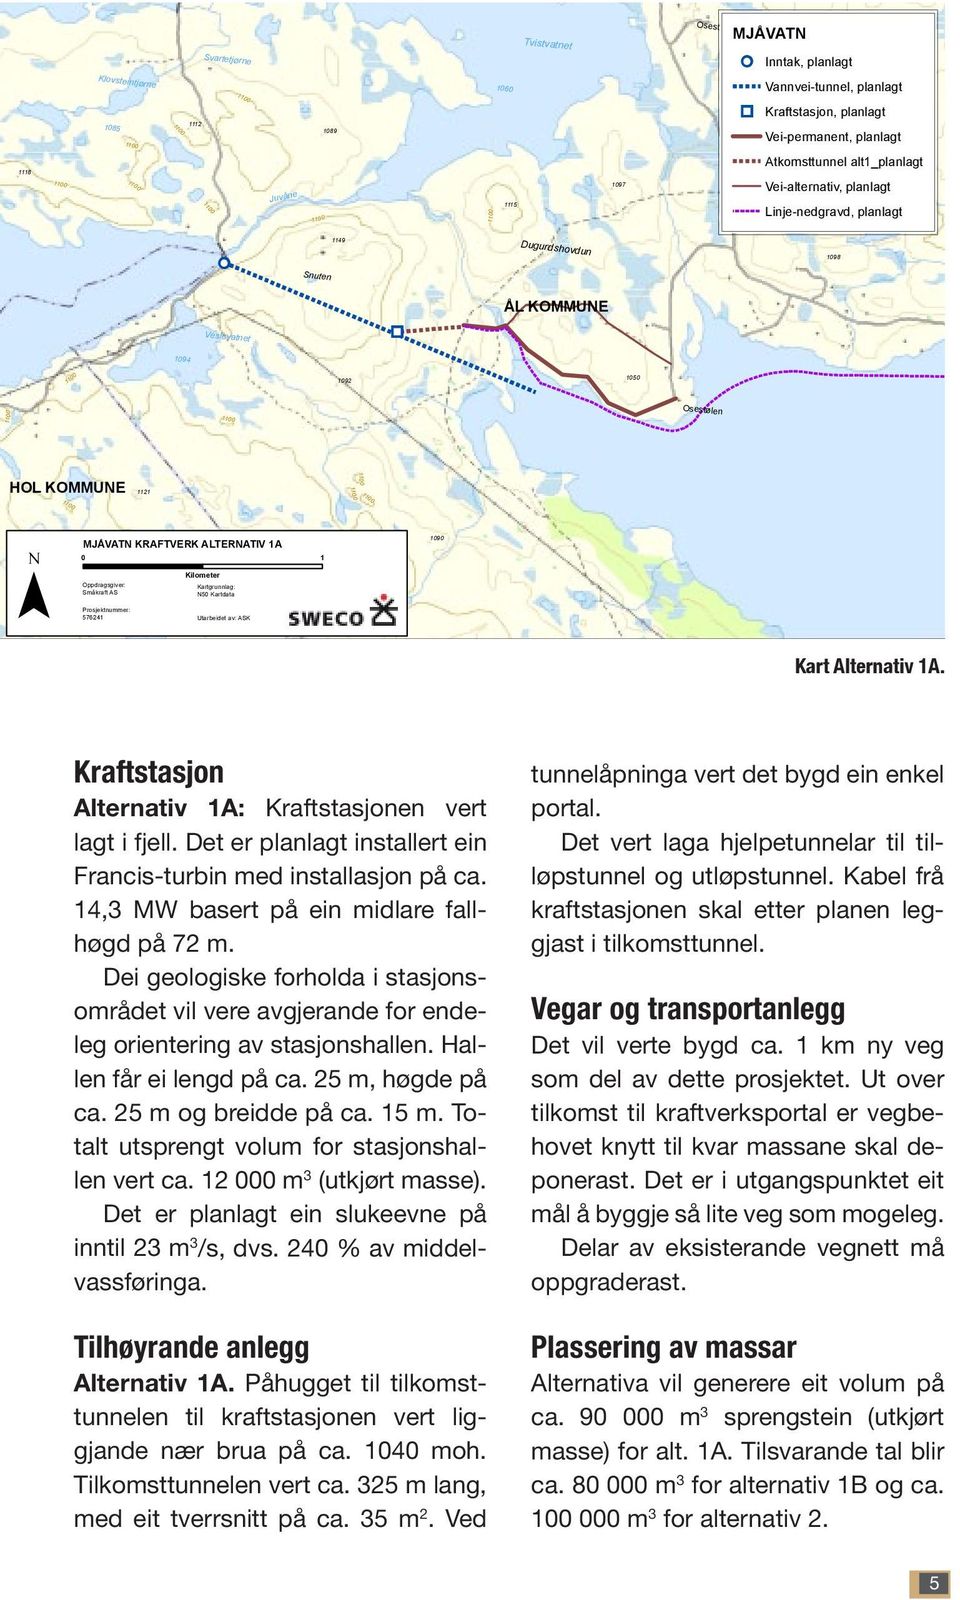 alt1_planlagt Vei-alternativ, planlagt Linje-nedgravd, planlagt 1149 Dugurdshovdun!